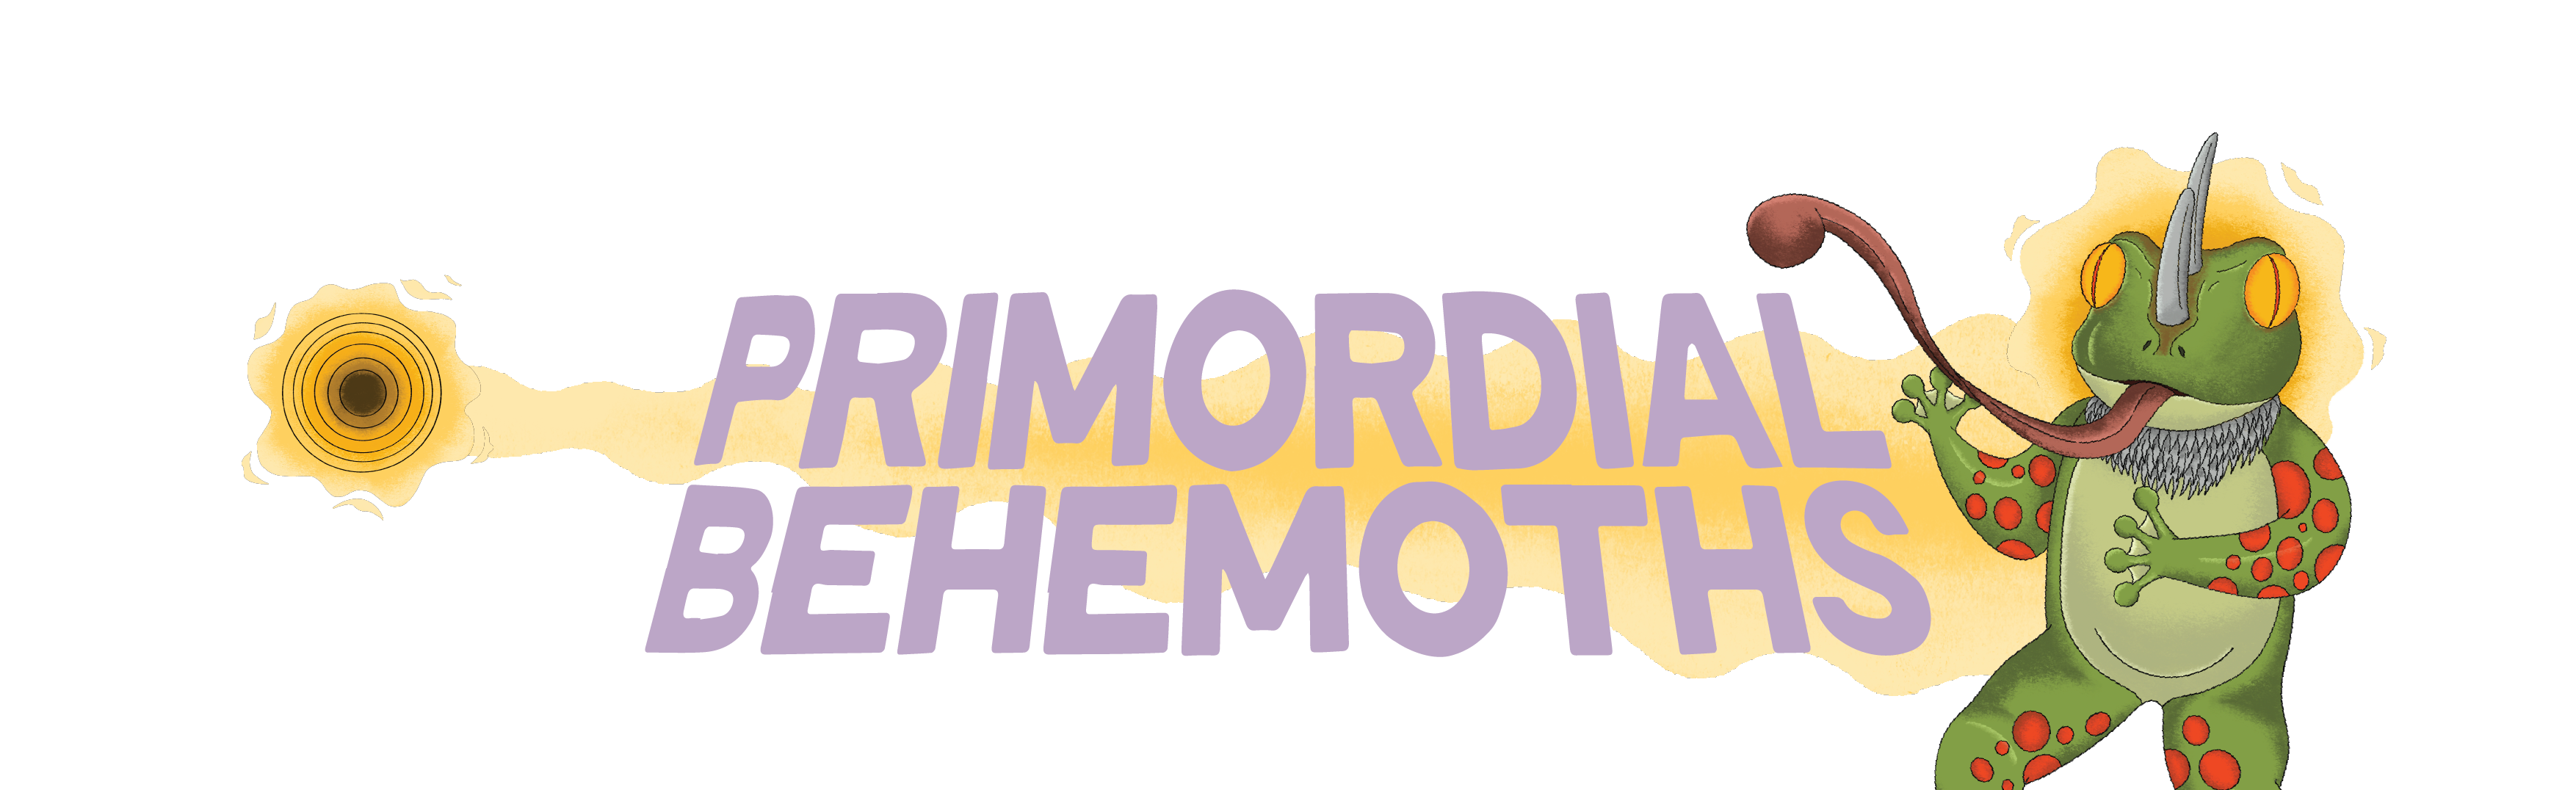 Primordial Behemoths - Rebuilding Terra